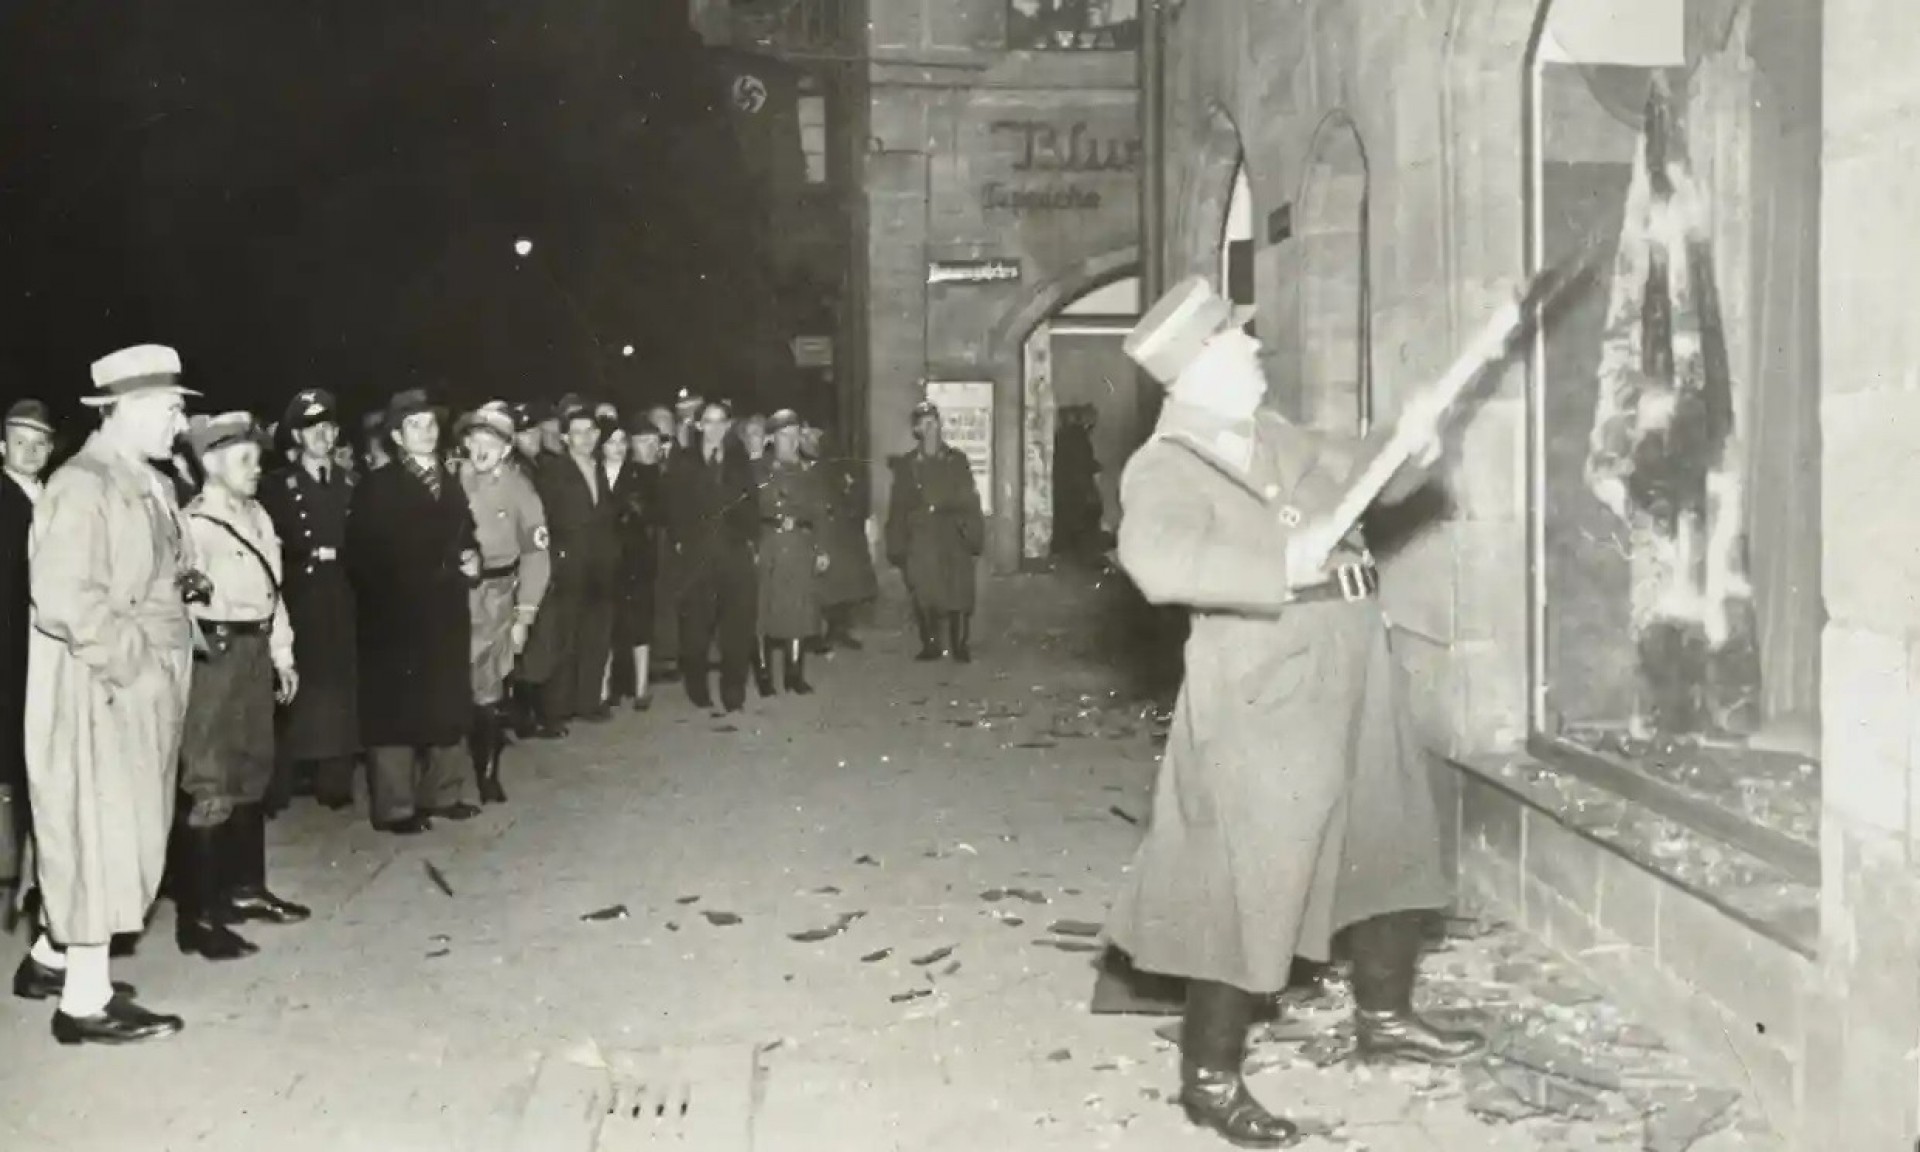 População alemã assiste vandalização das propriedades judaicas na Noite dos Cristais Quebrados. Provavelmente em Fürth, nos arredores de Nuremberg, em 10.11.1938. (Foto: Wikimedia Commons)